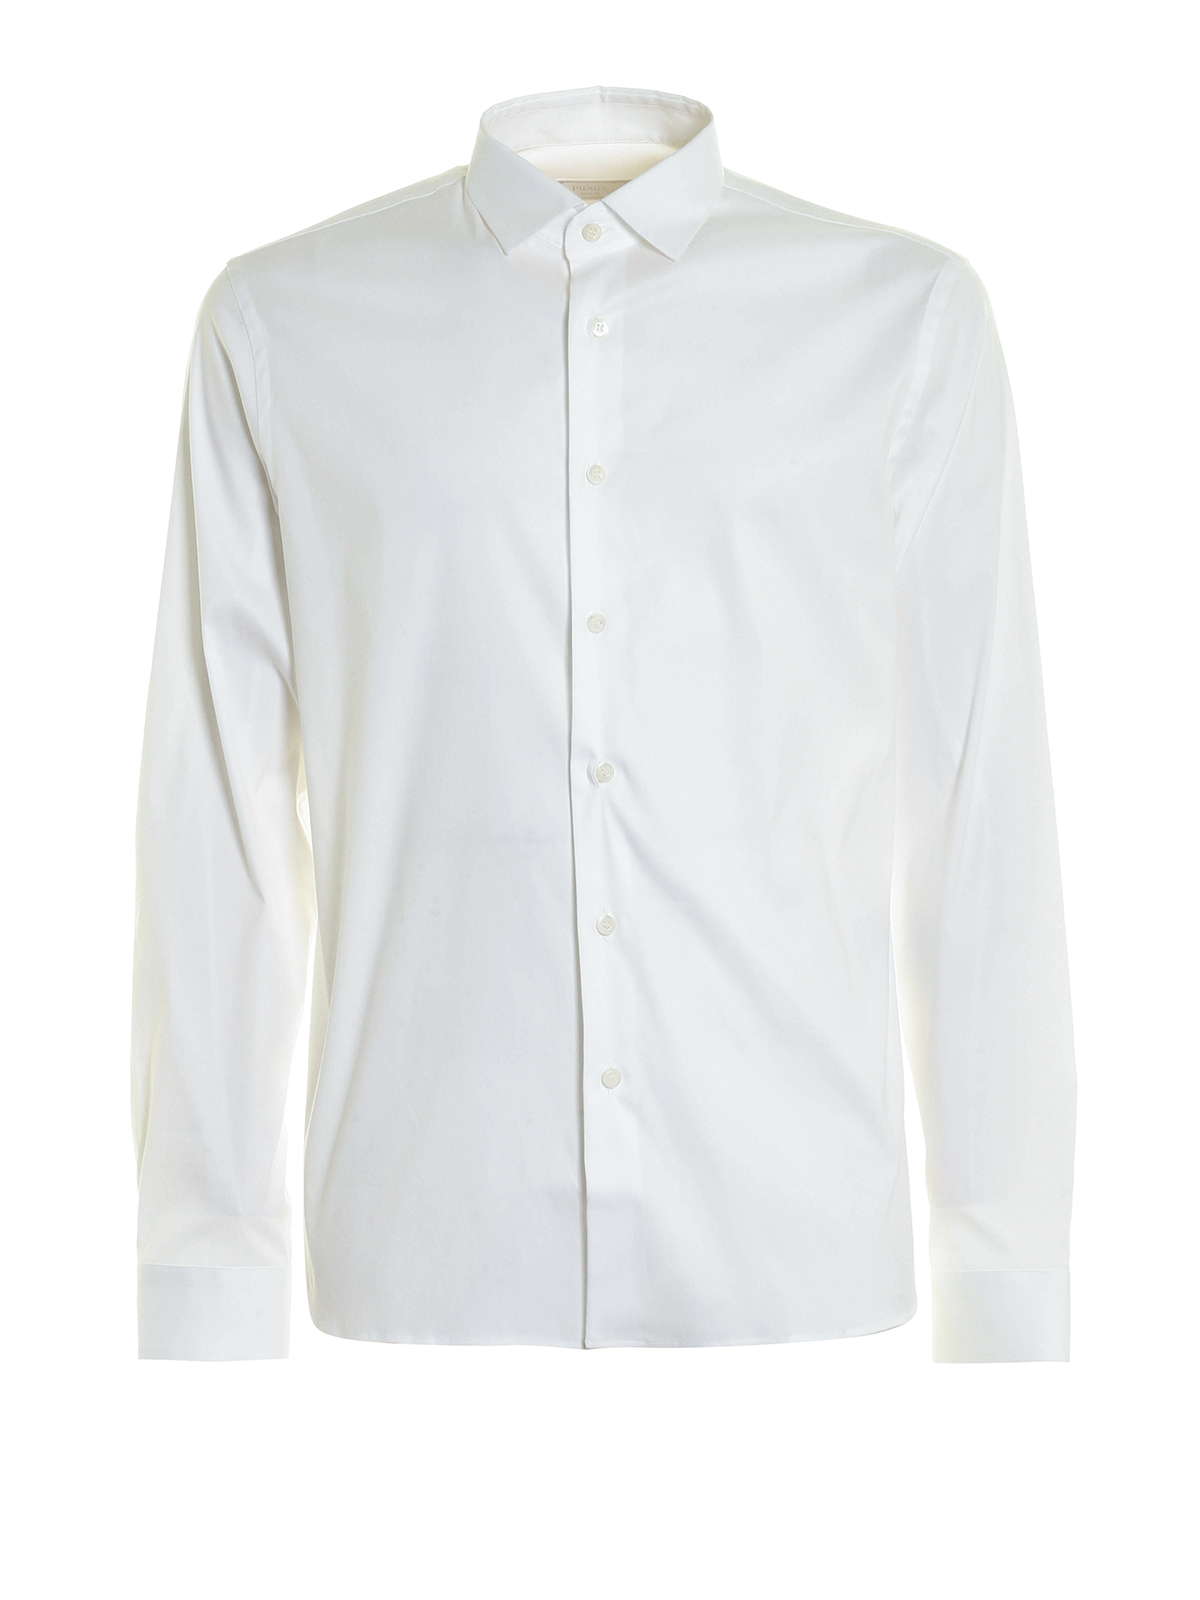 Camisas Prada - Camisa Blanca Para Hombre - UCM897F62009 